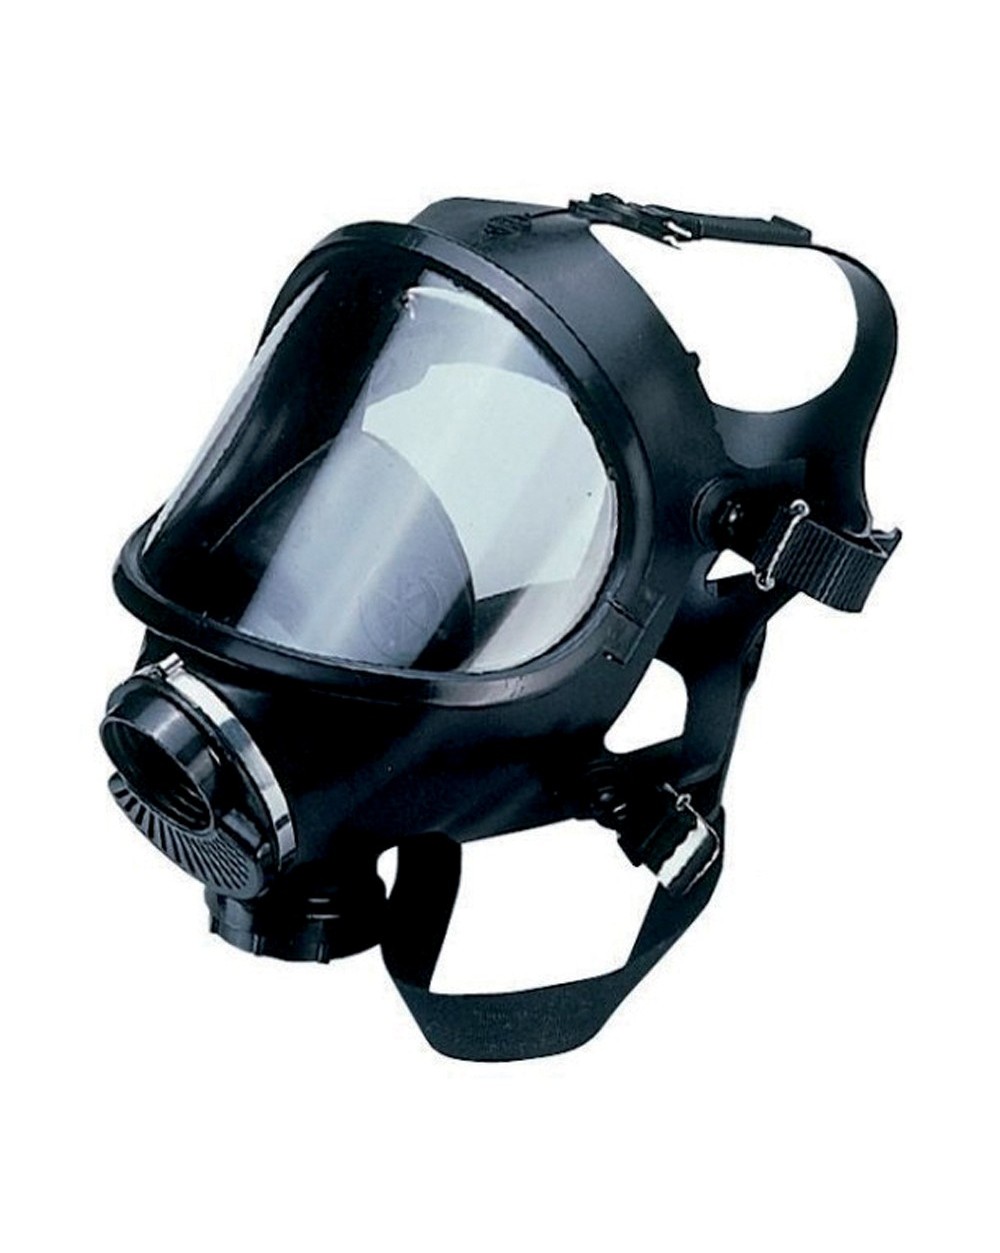 Protection respiratoire : masques de protection et normes - Mabi